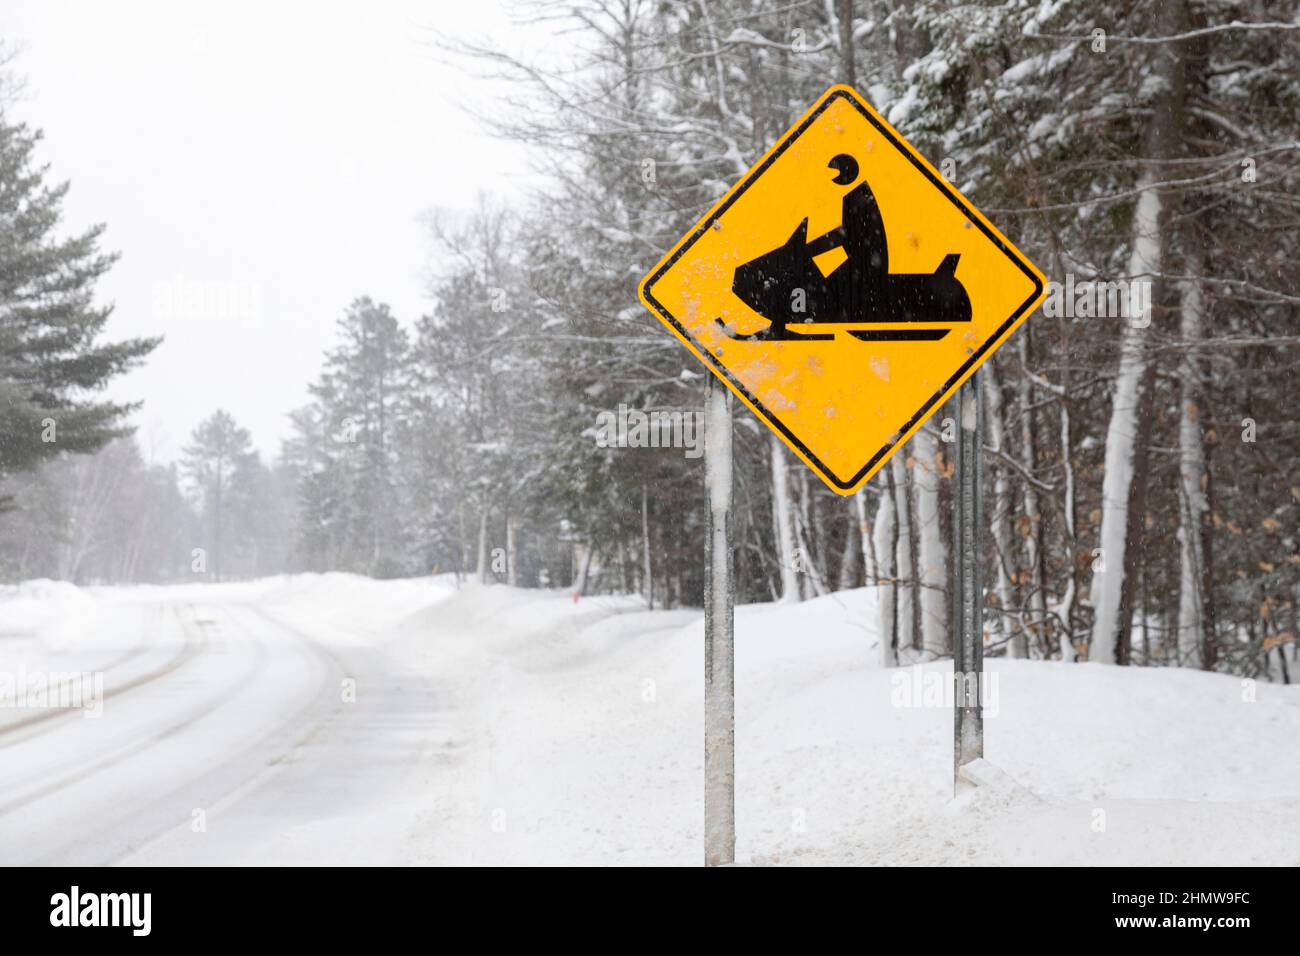 Paradise, Michigan - Un panneau le long de la M-123 dans la péninsule supérieure du Michigan avertit les conducteurs de chercher des motoneiges qui traversent la route. Banque D'Images